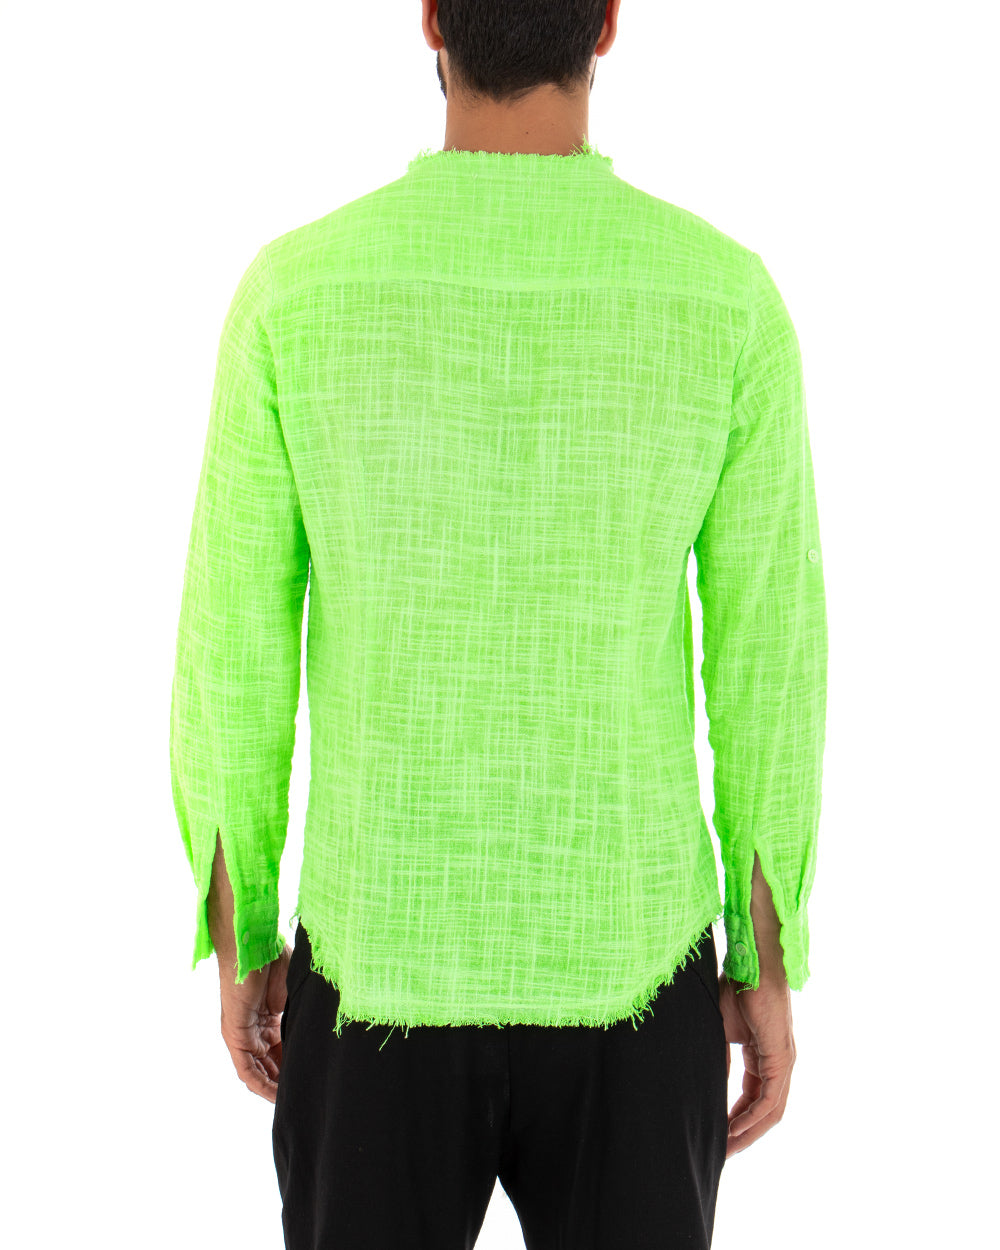 Camicia Uomo Sfrangiata Tinta Unita Verde Fluo Manica Lunga Casual Cotone Lino GIOSAL-C2731A